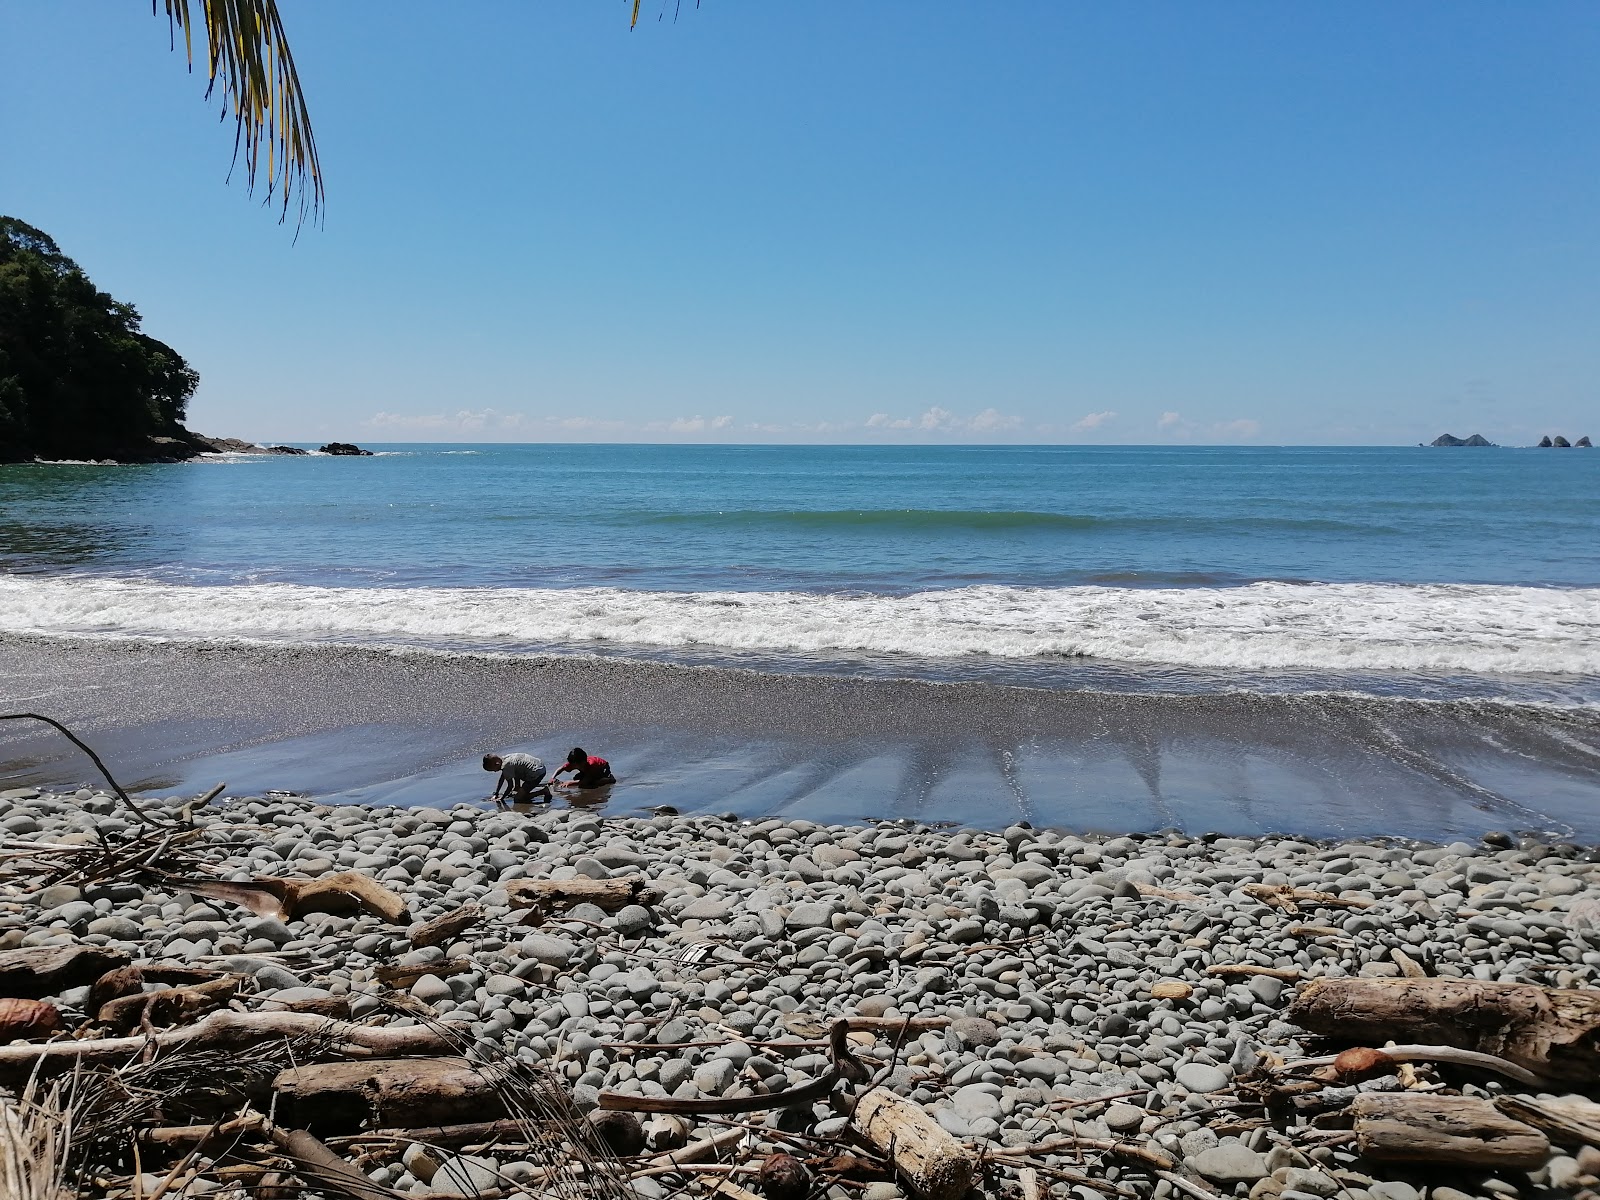 Playa Pinuelas'in fotoğrafı geniş plaj ile birlikte